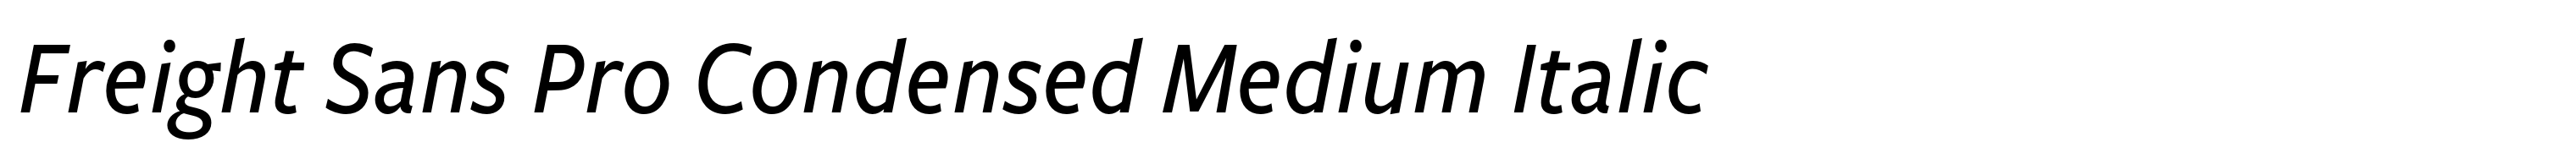 Freight Sans Pro Condensed Medium Italic